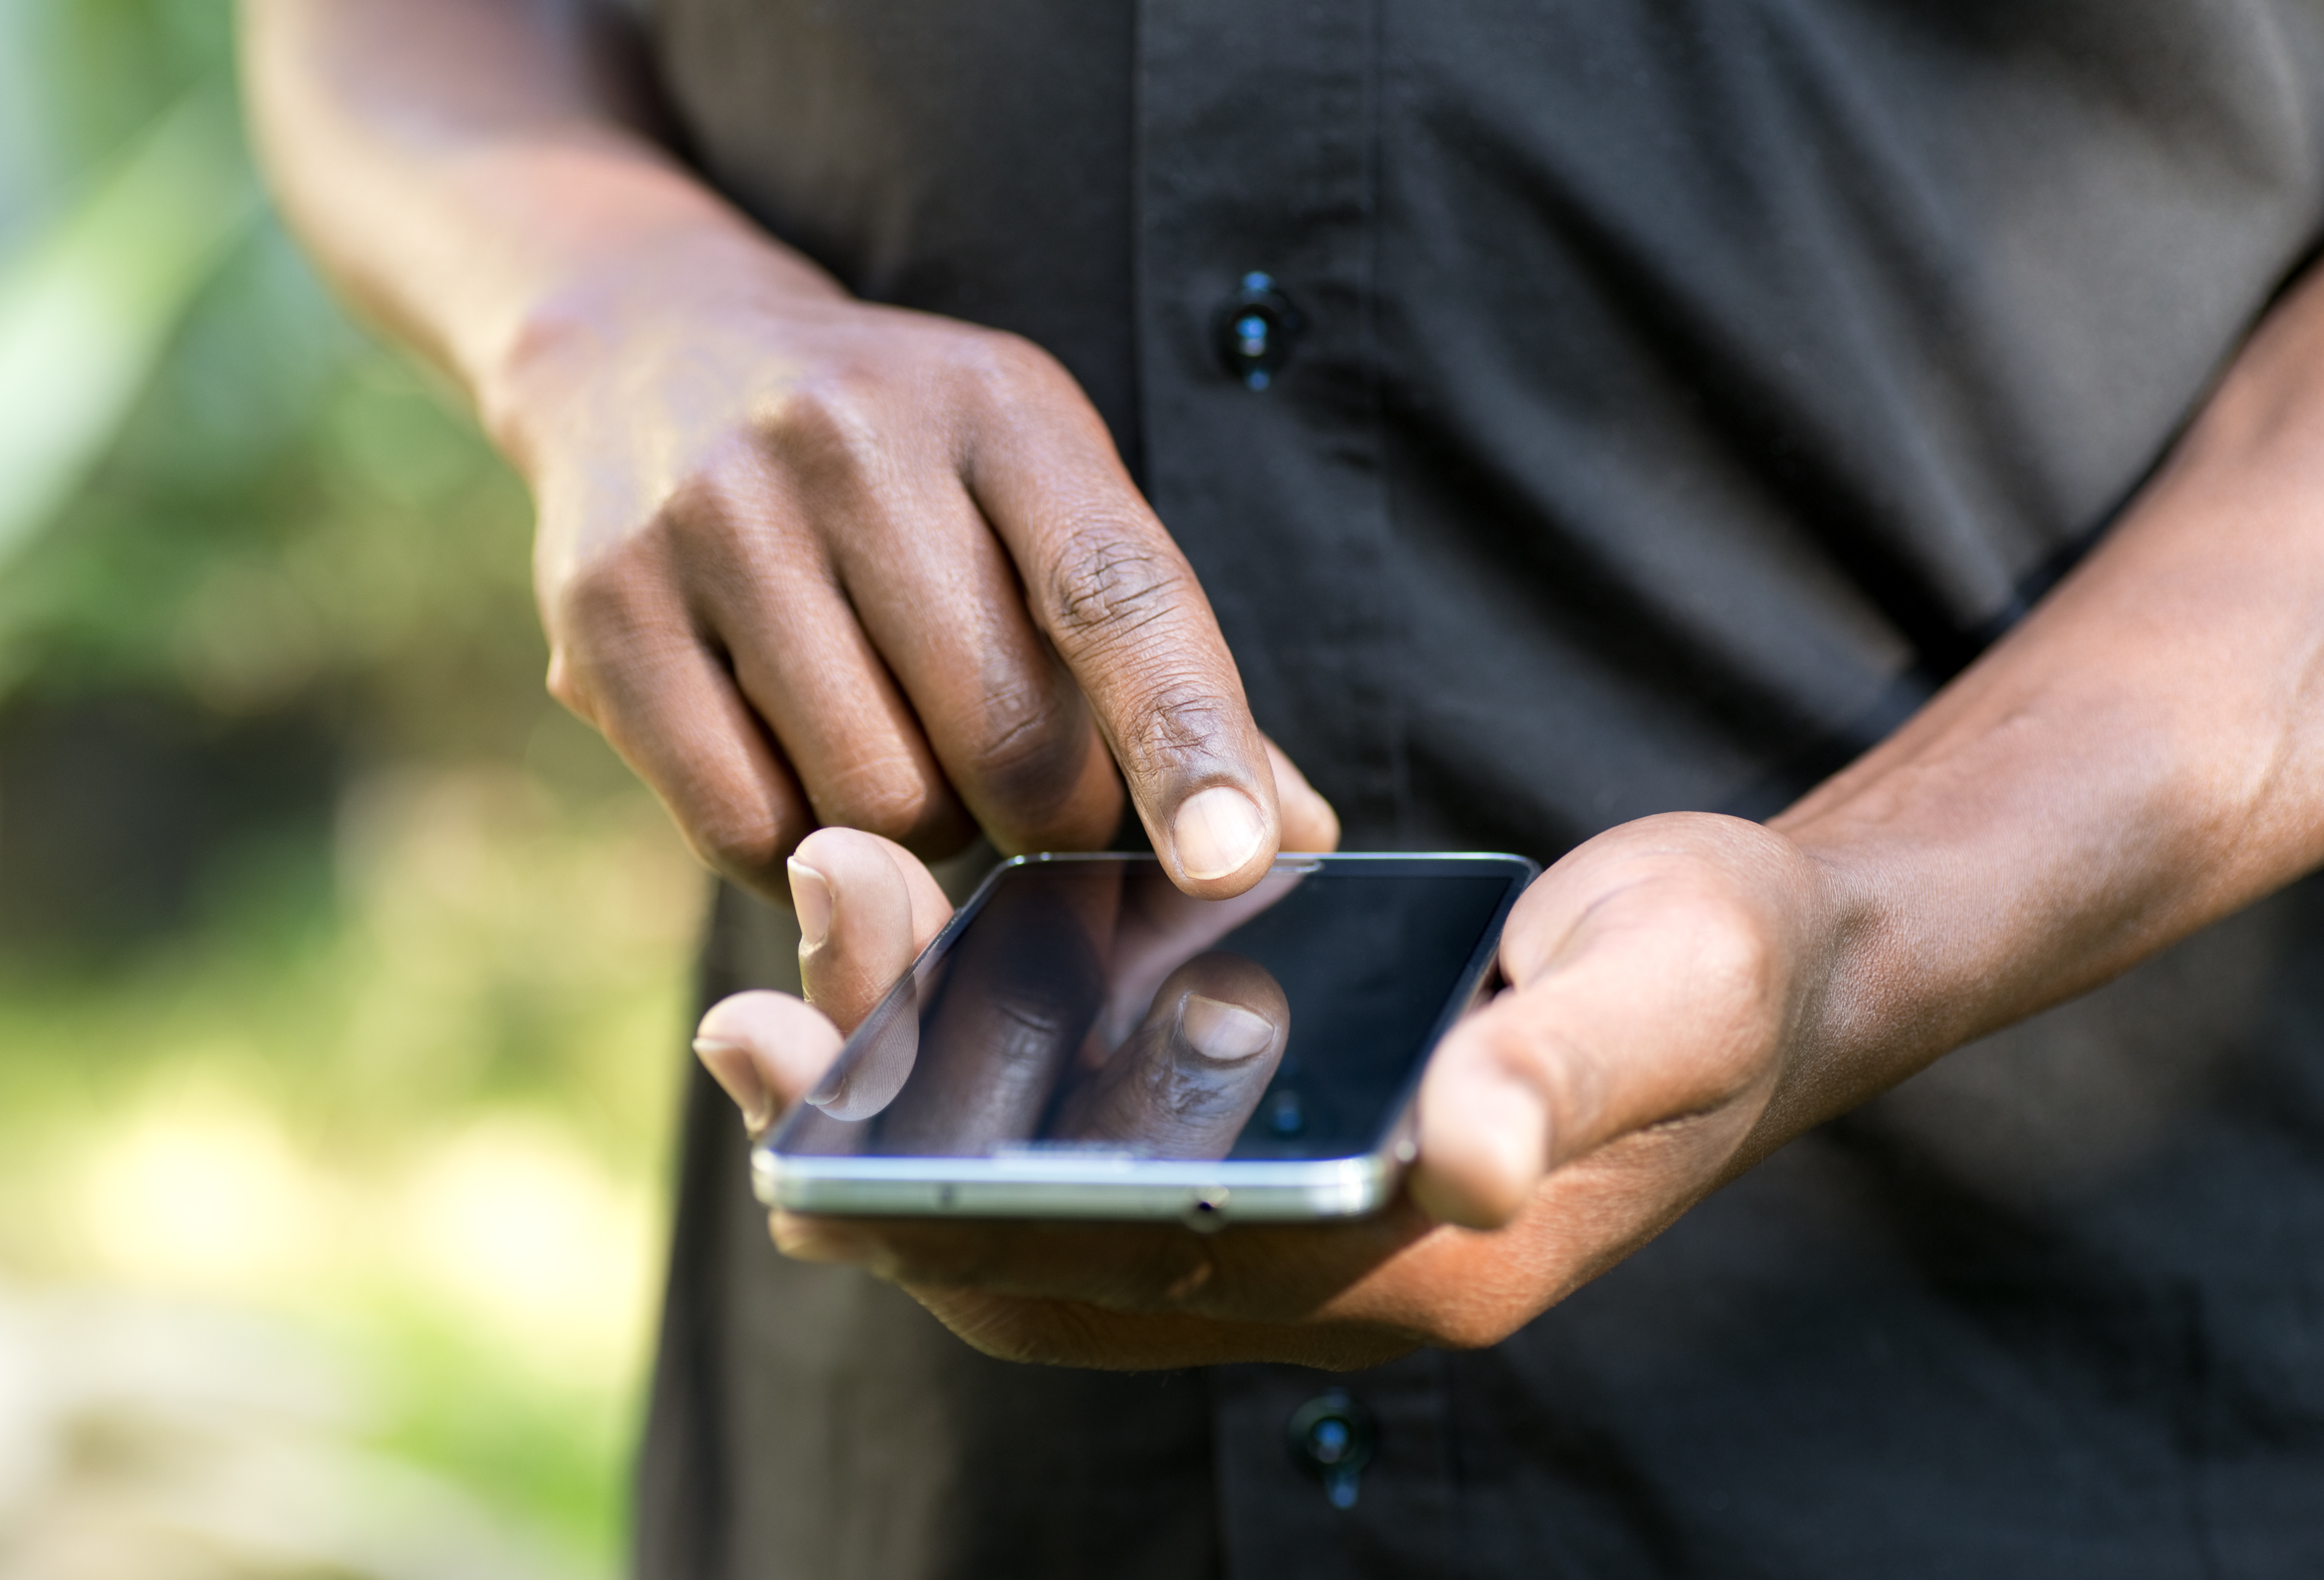     Youtube et Whatsapp, les plateformes les plus utilisées par les Martiniquais

